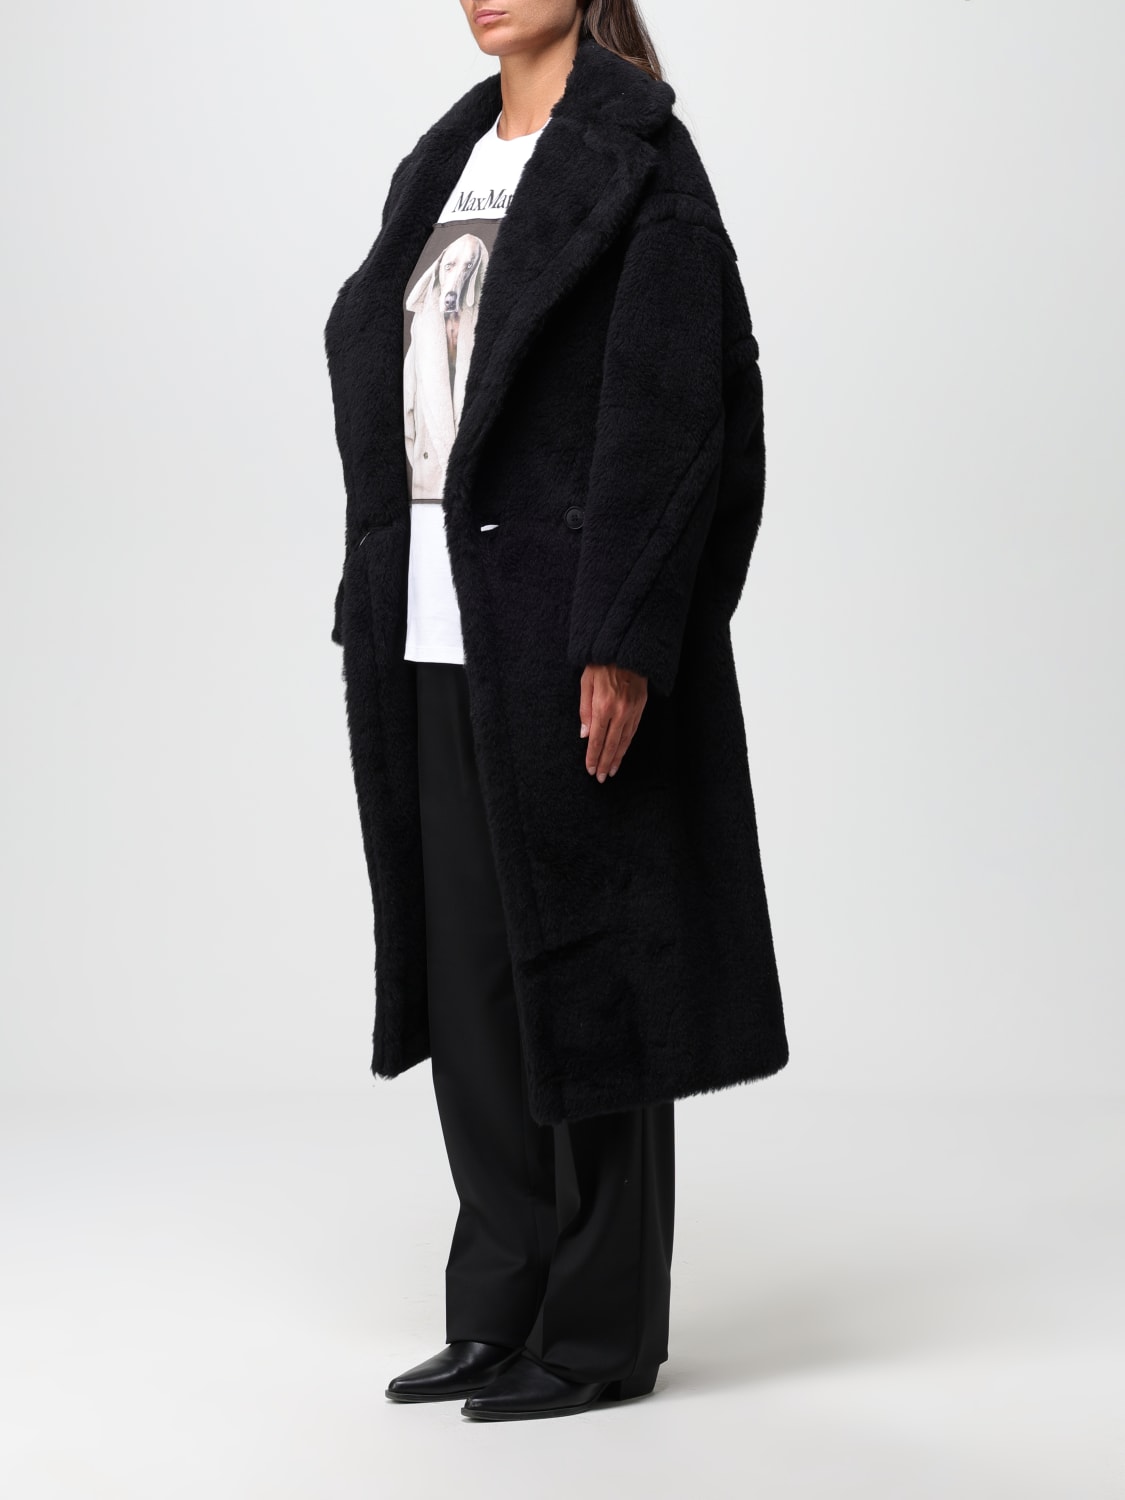 MAX MARA: women's coat - Black | Max Mara coat 2310160133600 online at ...